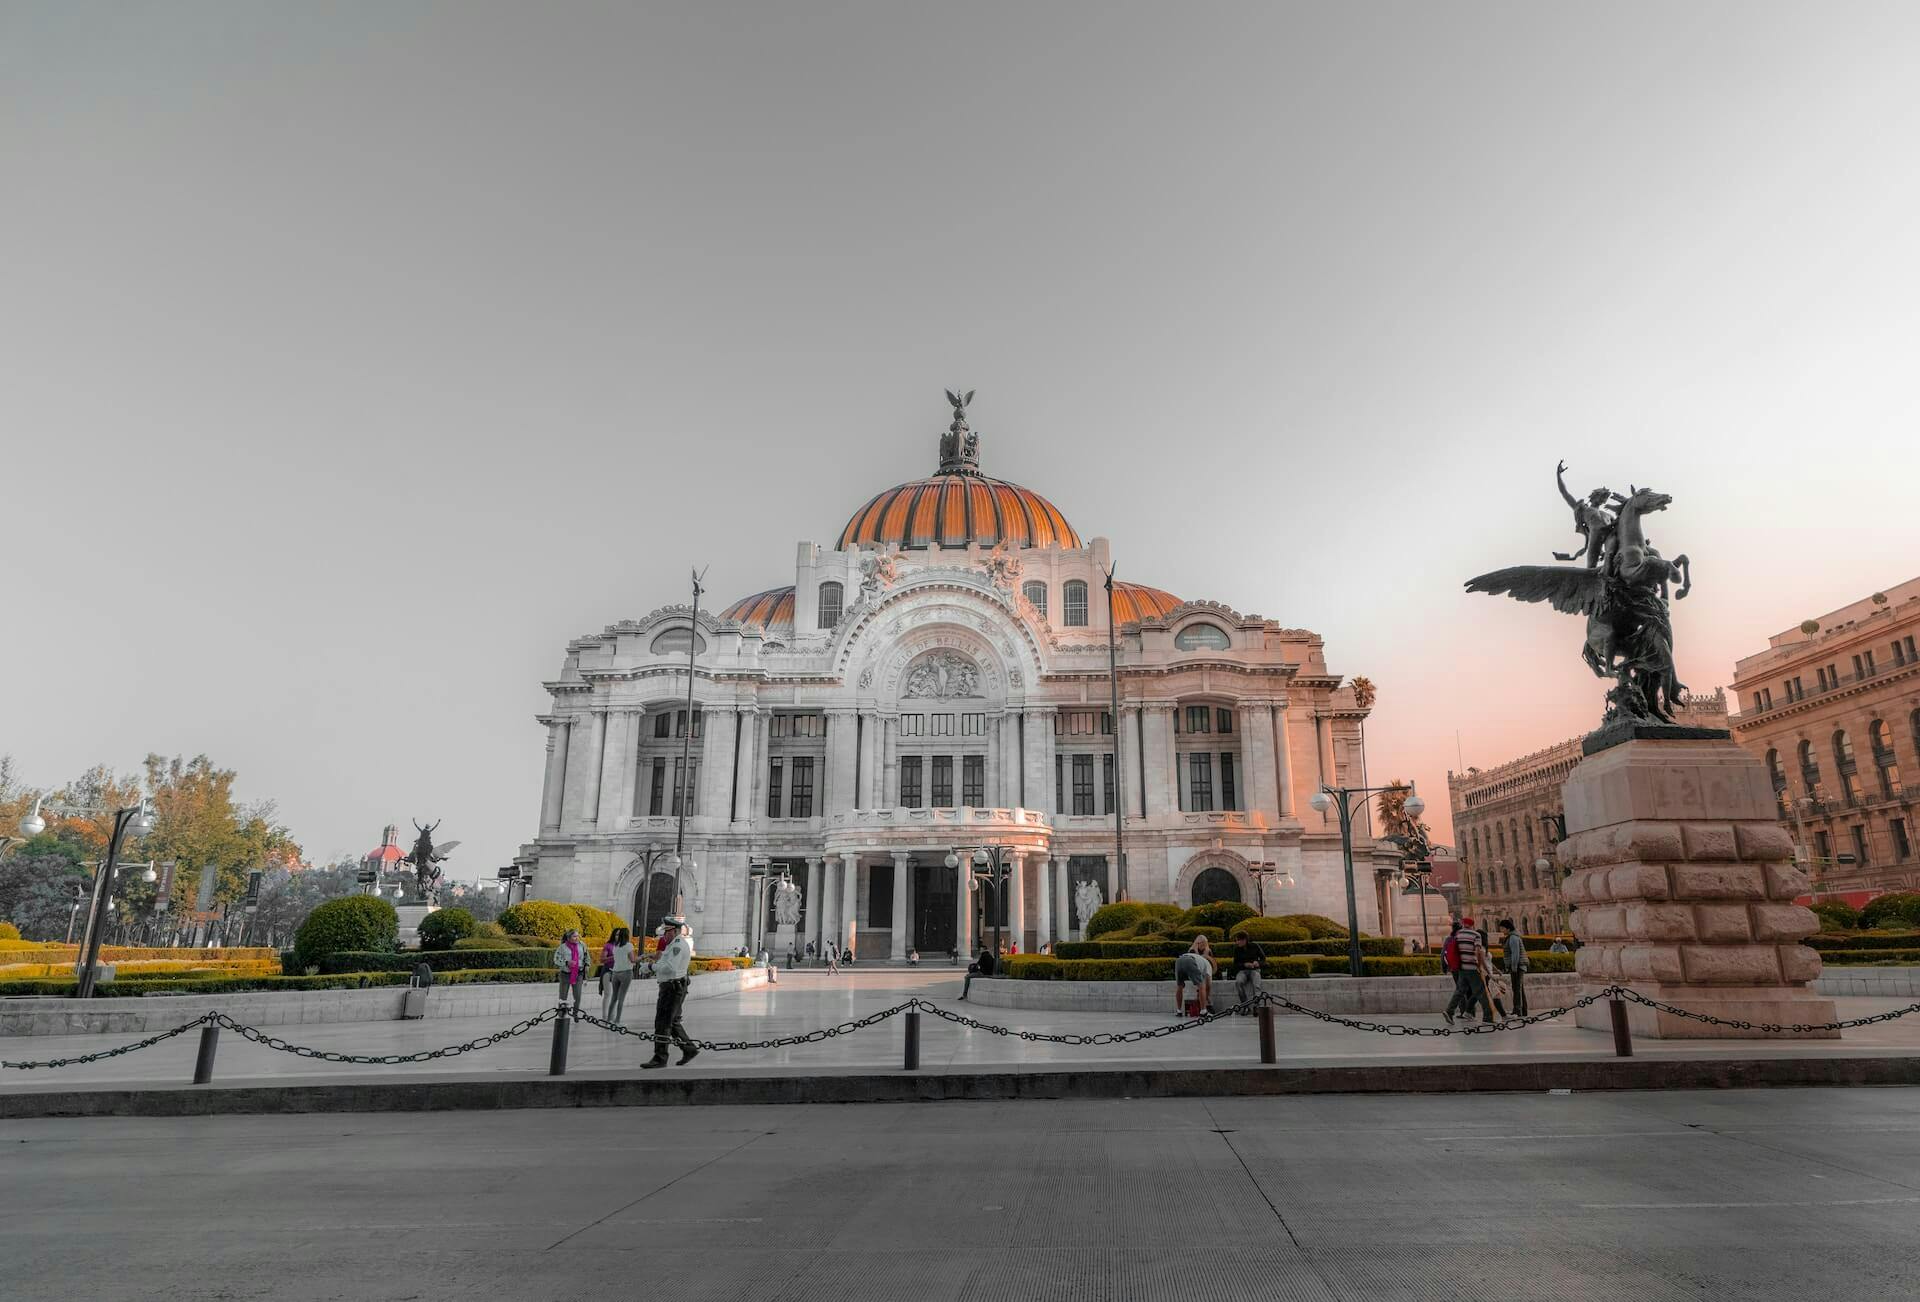 Palacio de Bellas Artes Ciudad de México